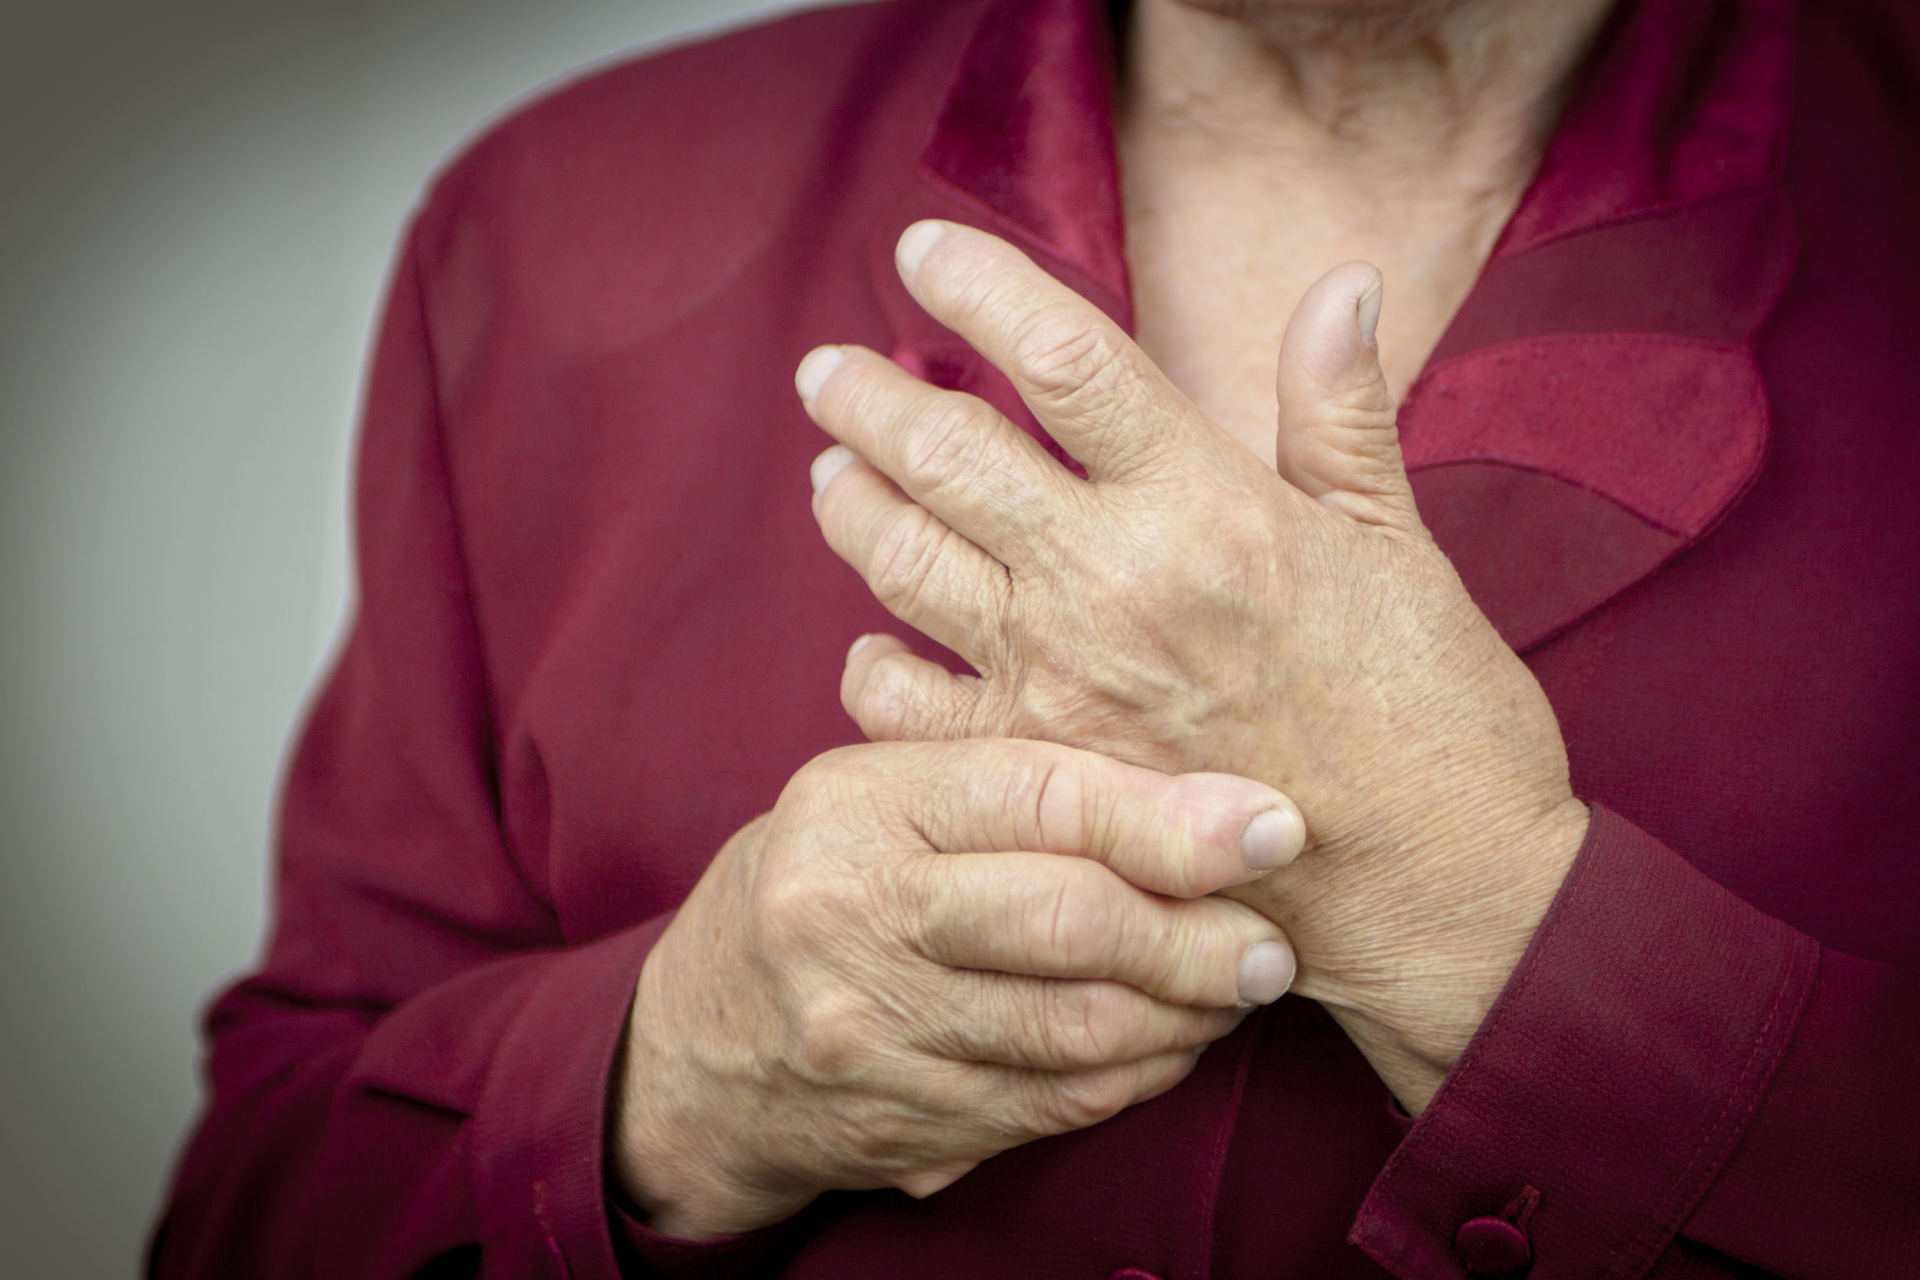 liaudies metodai gydant artrozė rankas